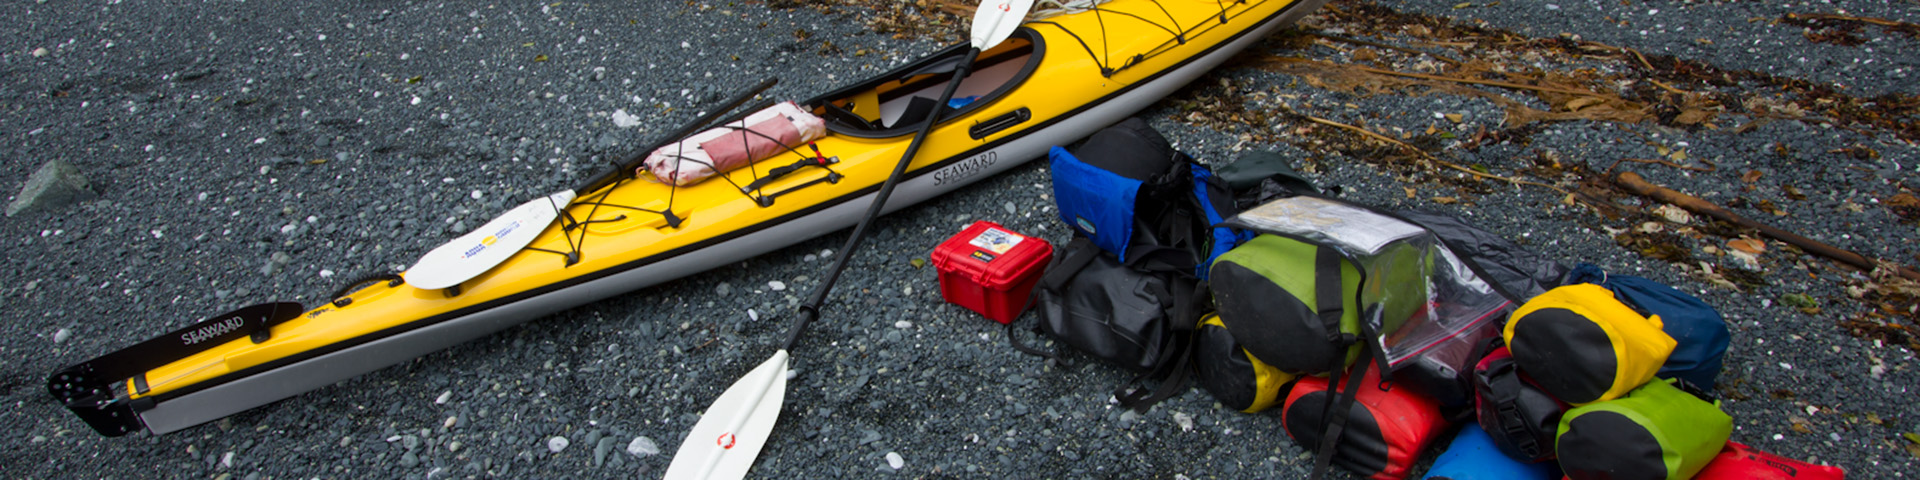 Kayak on beach with gear